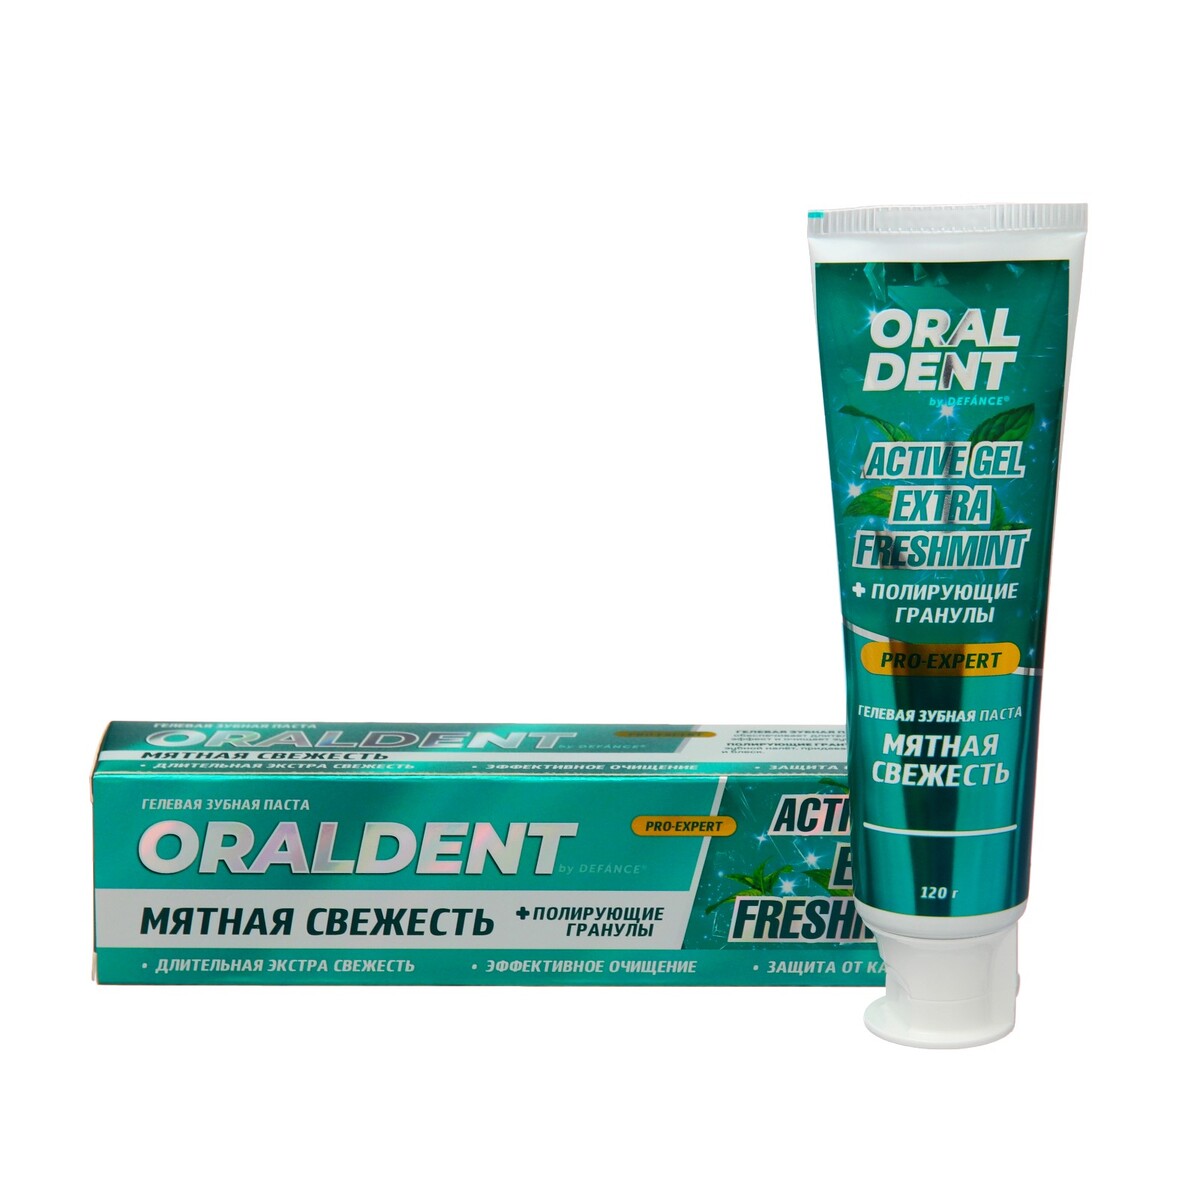 Зубная паста defance oraldent active gel extra freshmint, 120 г смайл эксперт про вайтенинг зубная паста бережное отбеливание 75мл